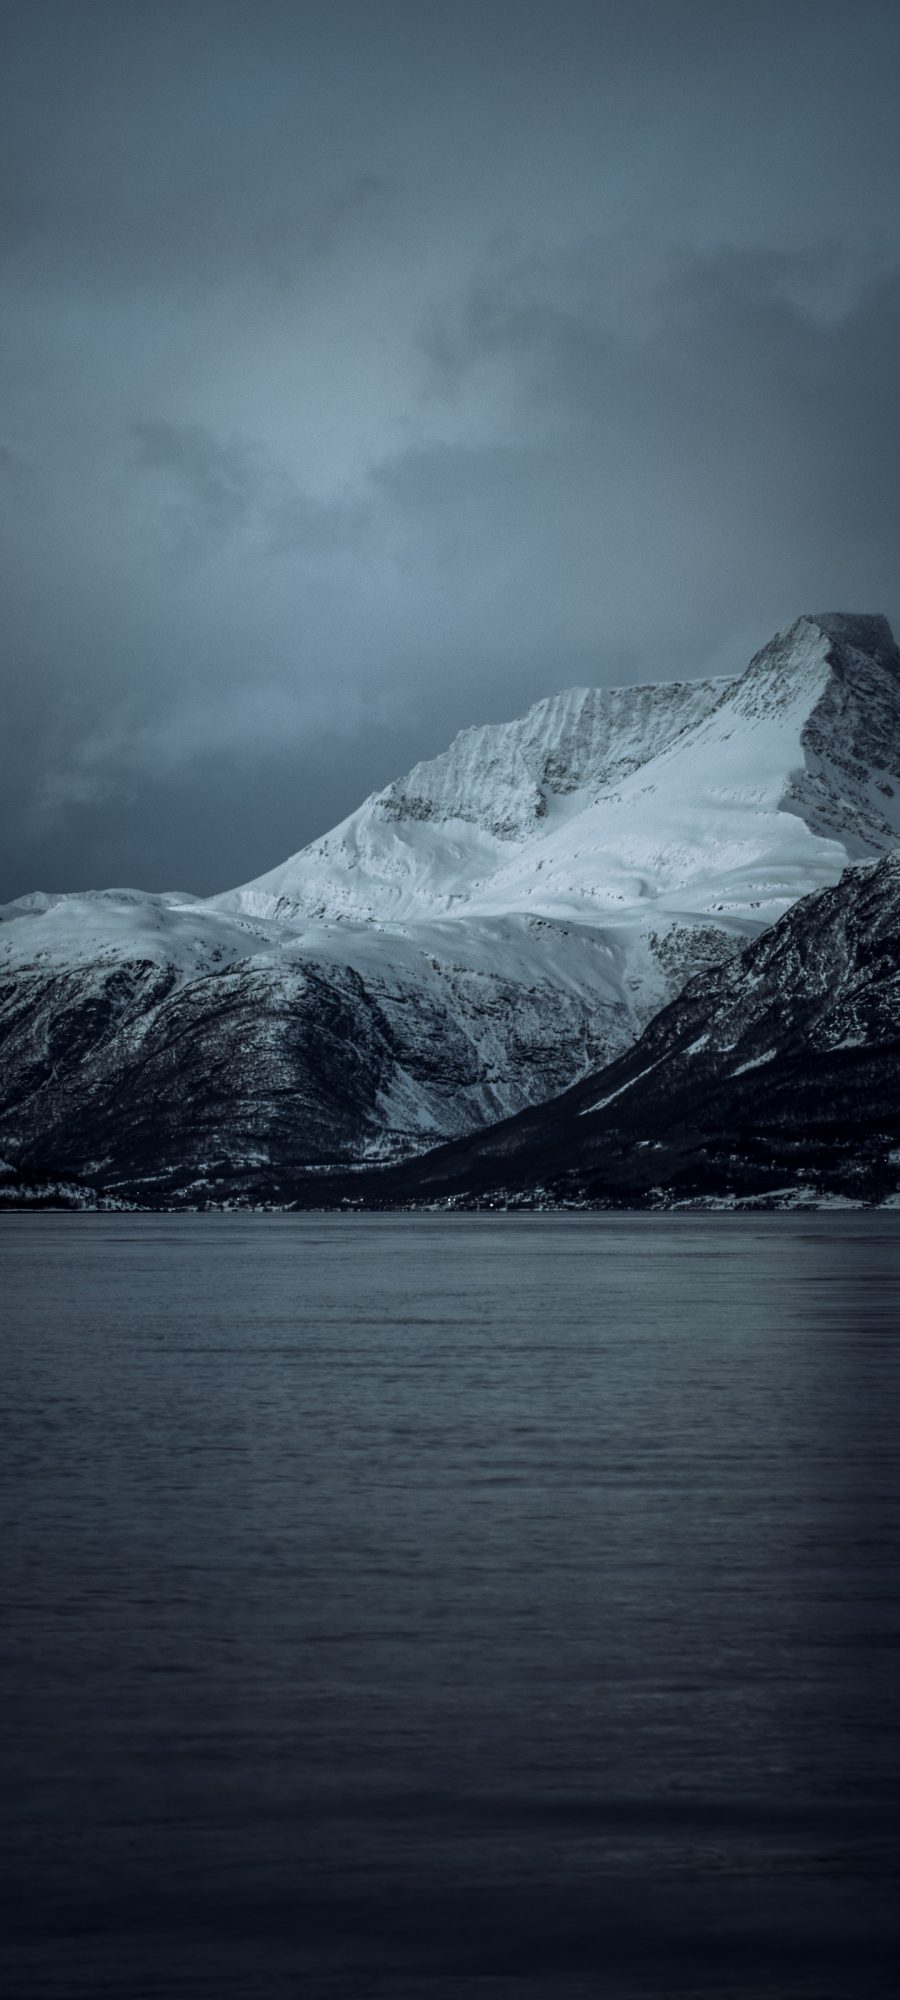 雪山覆盖的山峰风景壁纸图片 3200×1440